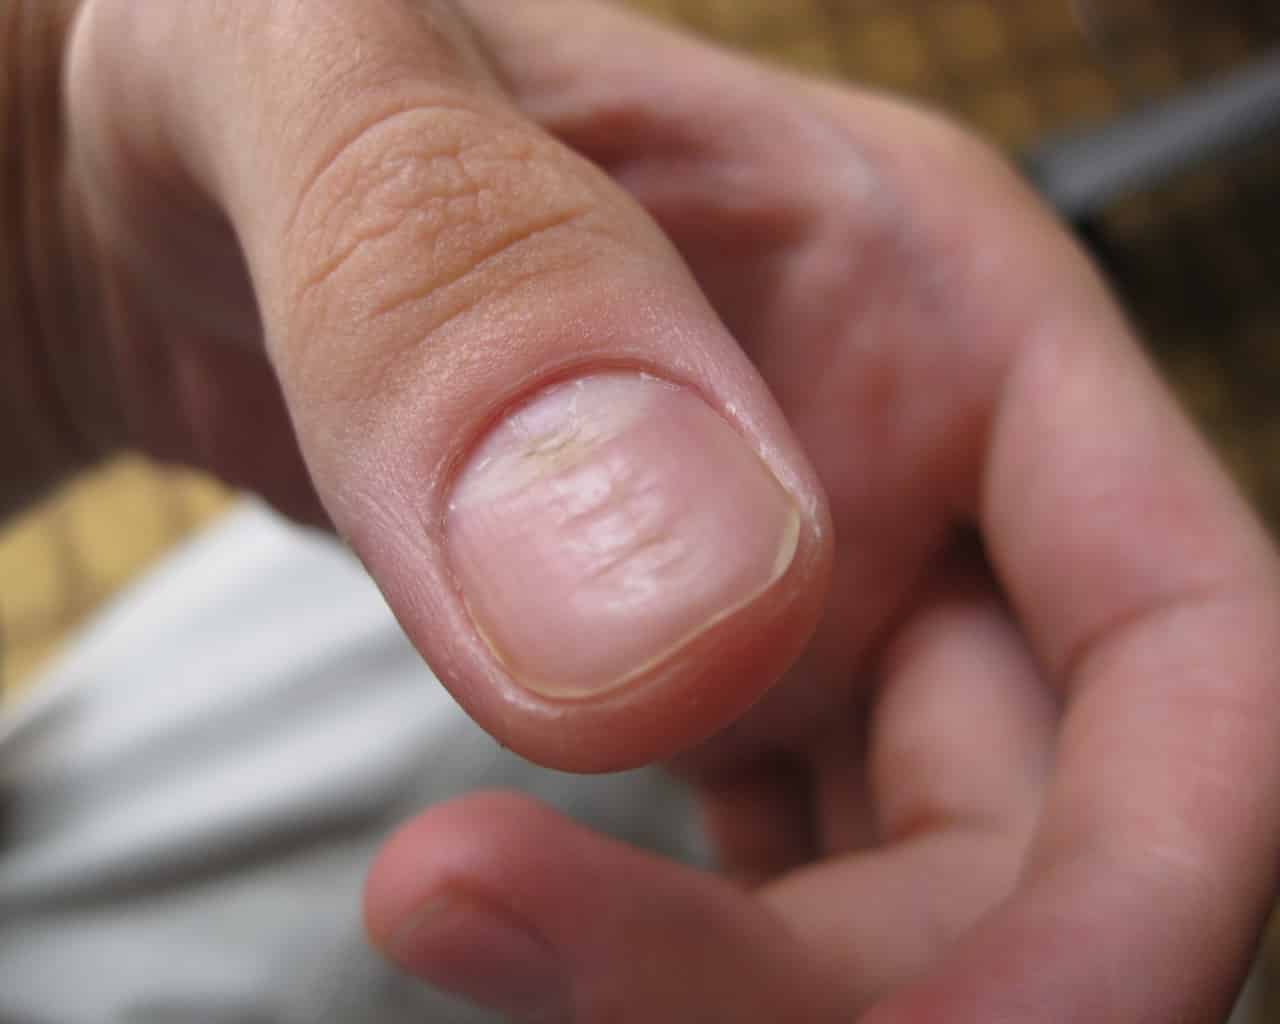 Ониходистрофии — симптомы и способы лечения грибка ногтей в клинике целт